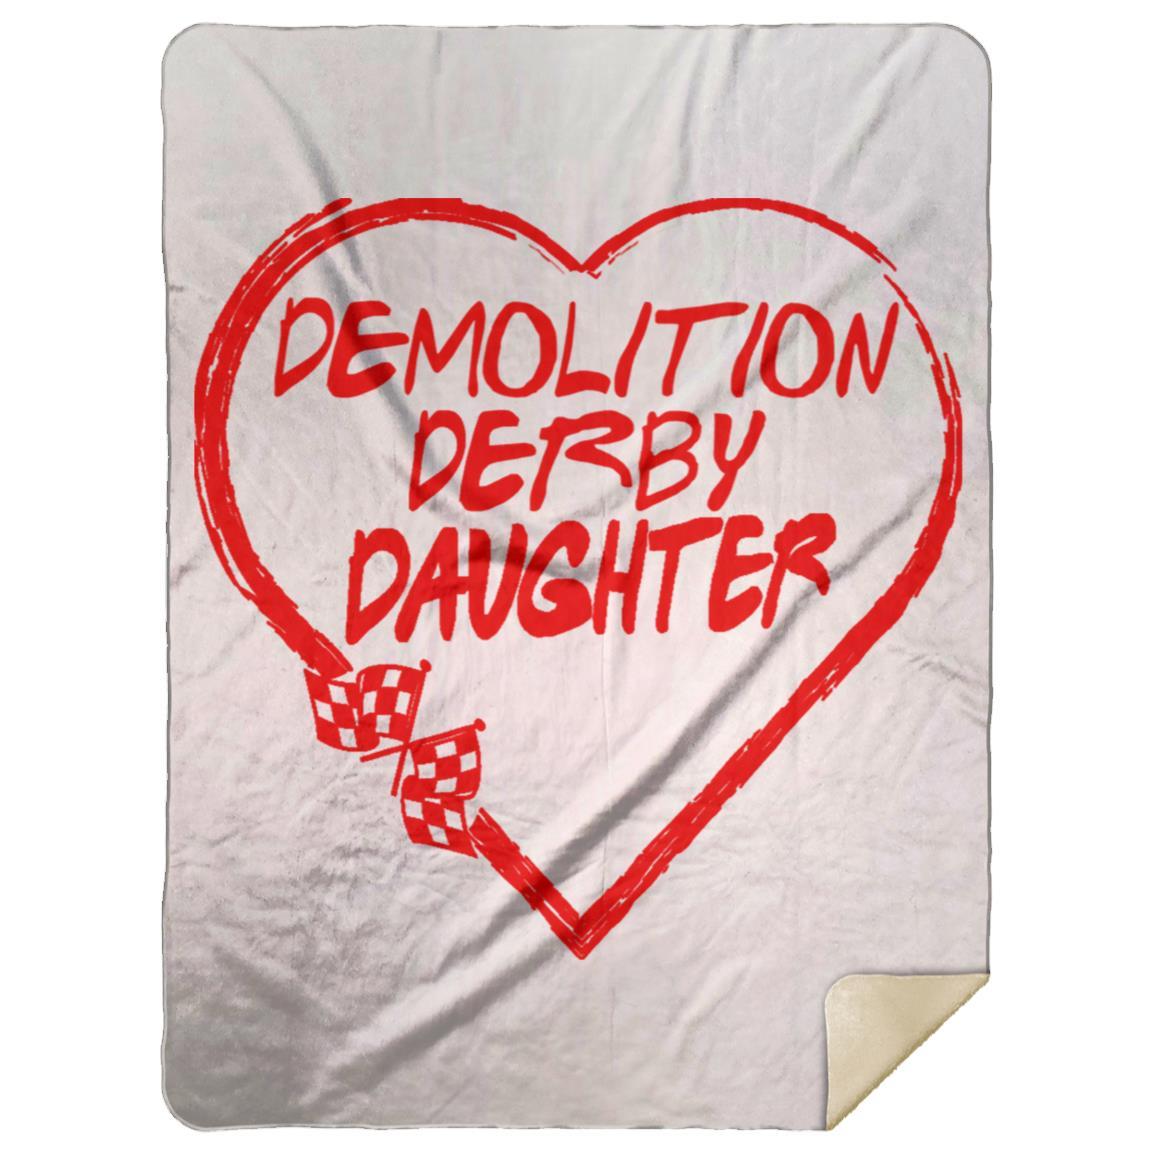 Demolition Derby Daughter Heart Premium Mink Sherpa Blanket 60x80